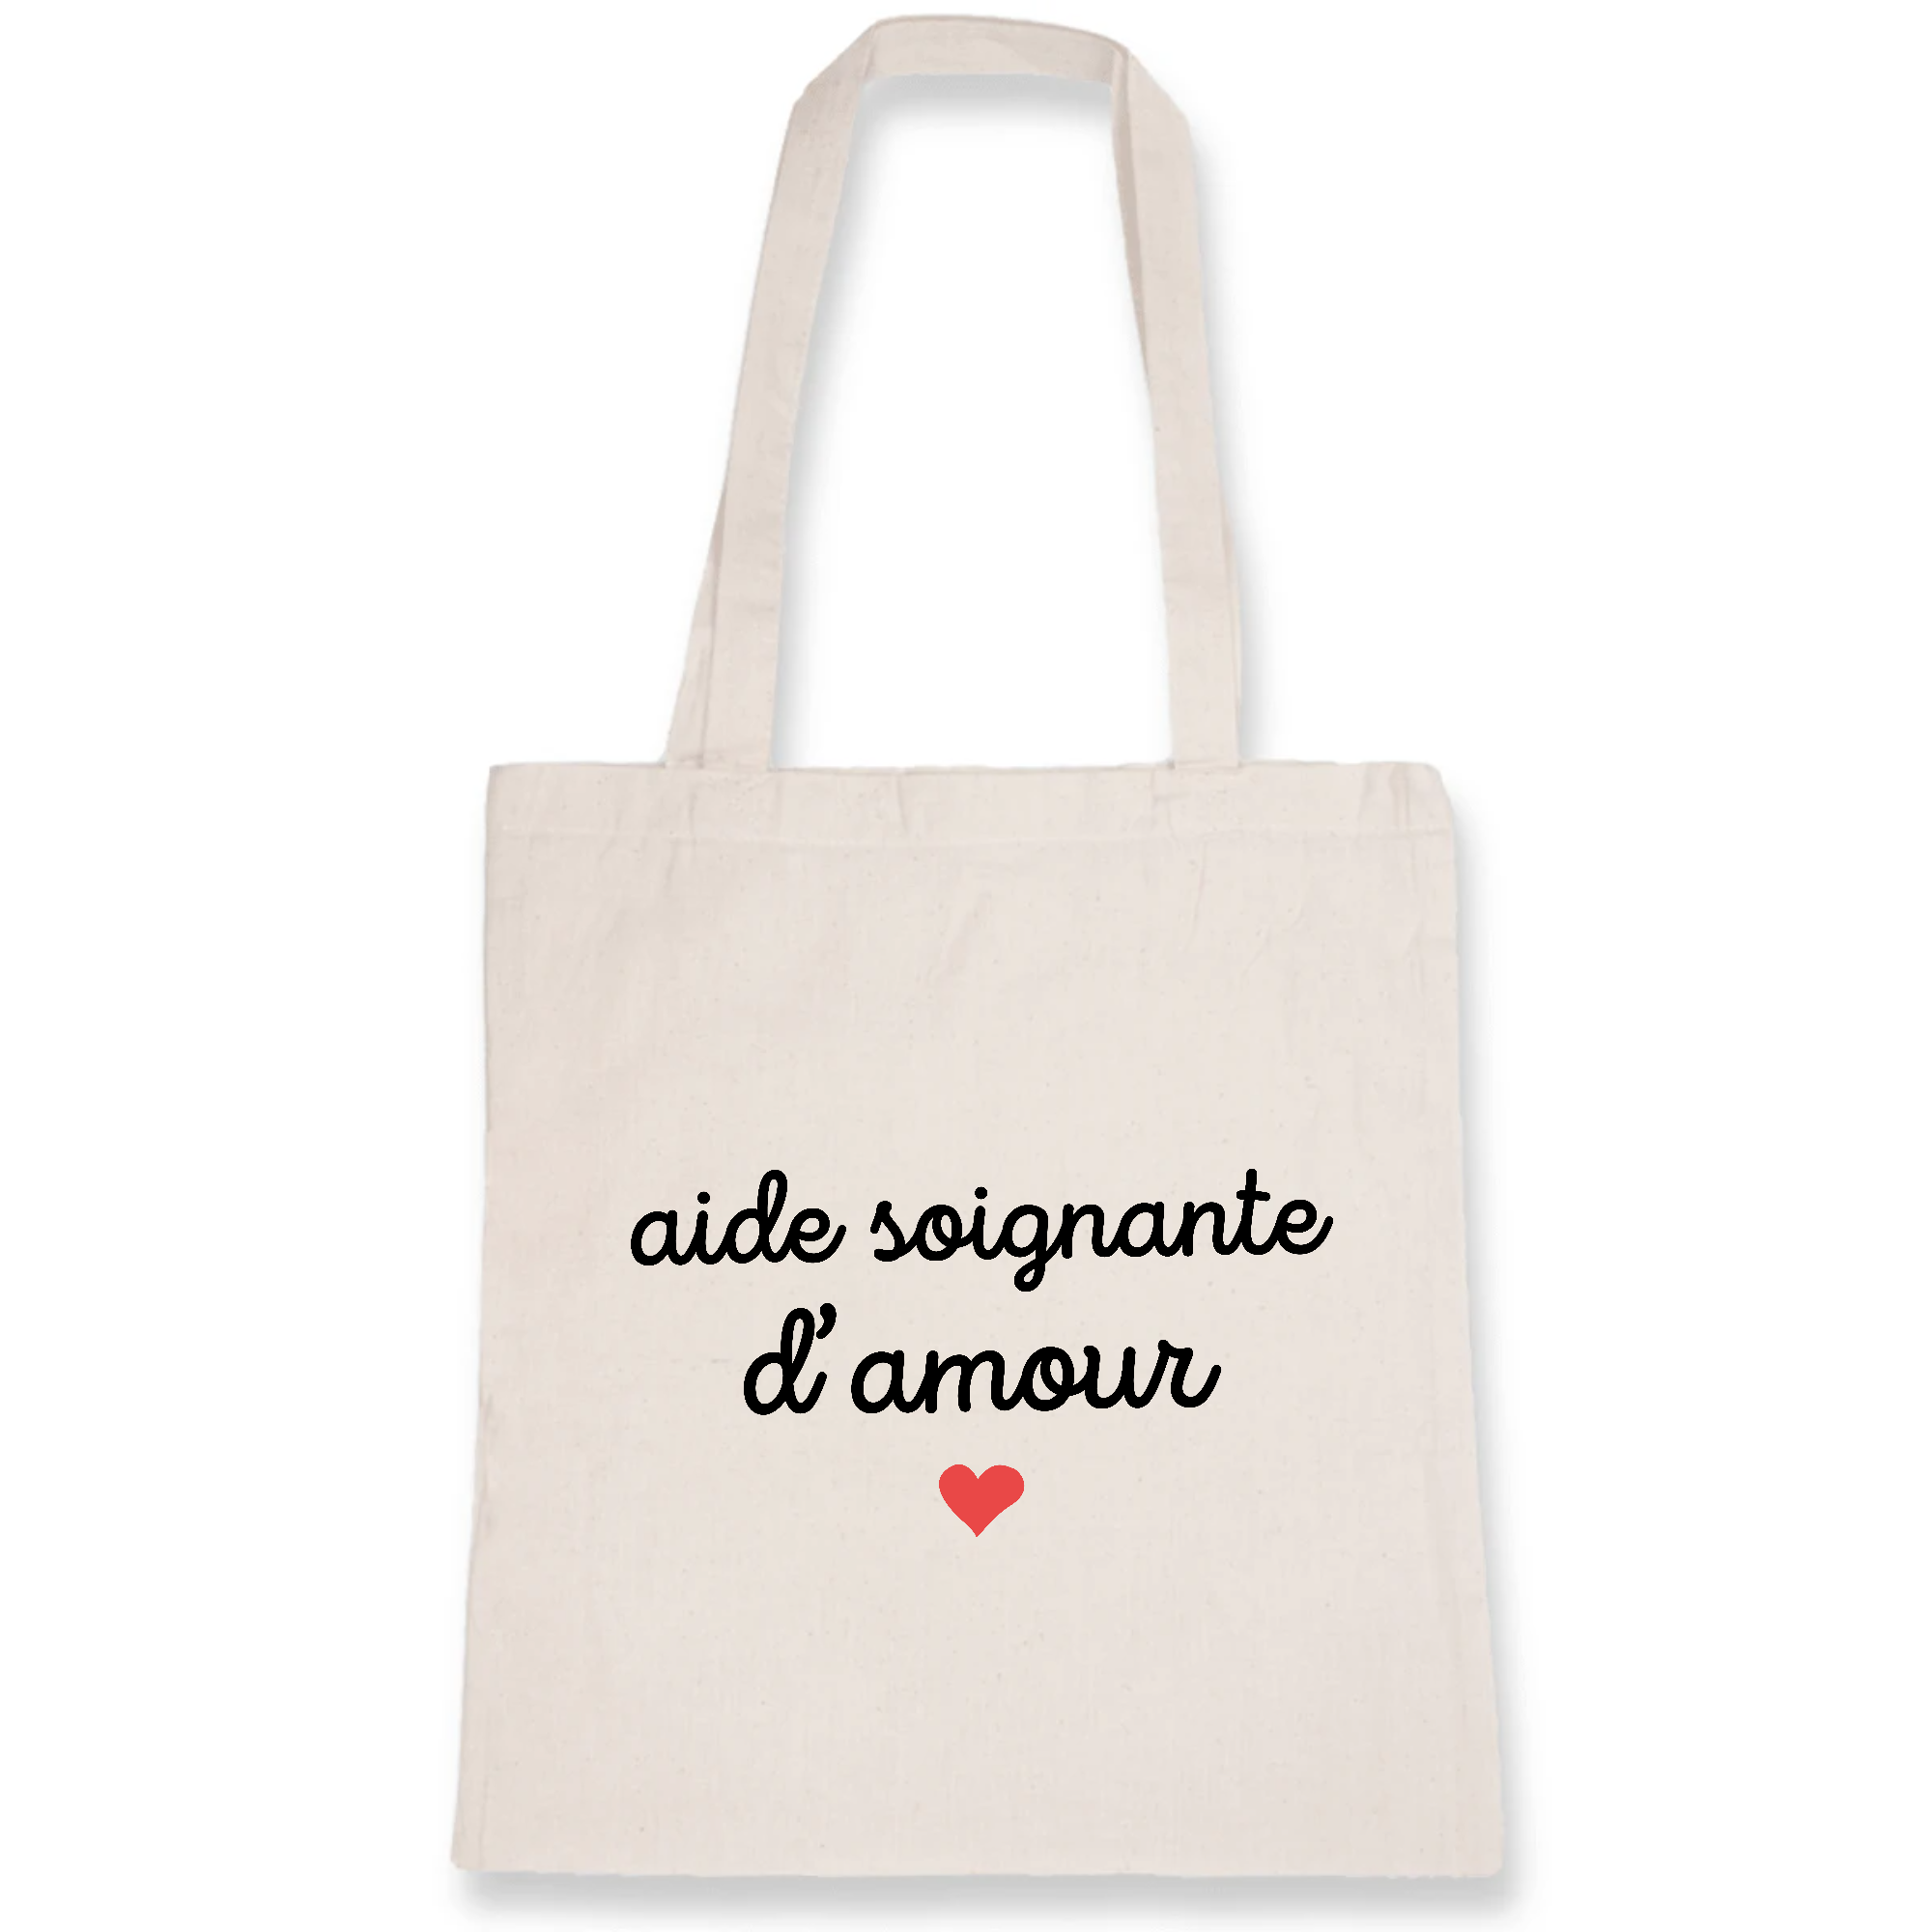 Aide-soignante d'amour | Boutique des Soignants | Reviews on Judge.me